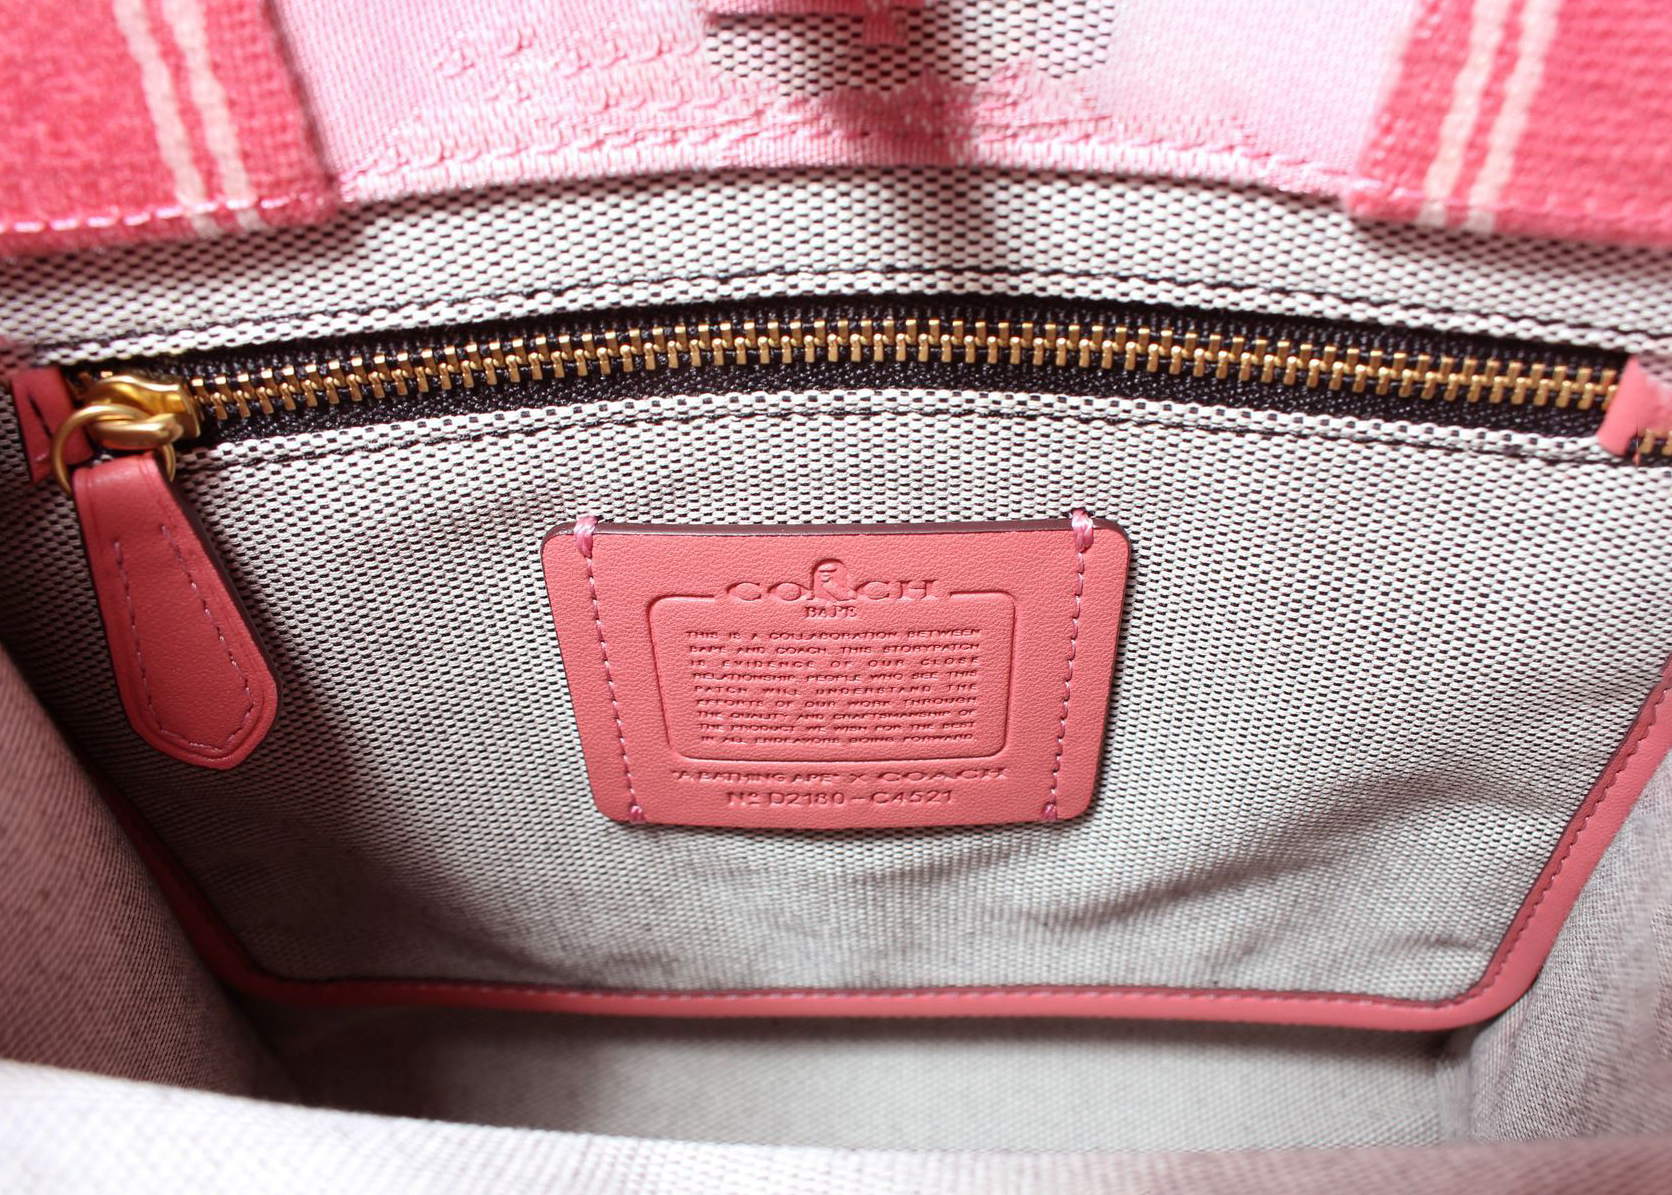 Coach Handbags : Bags & Accessories | Pink - Walmart.com